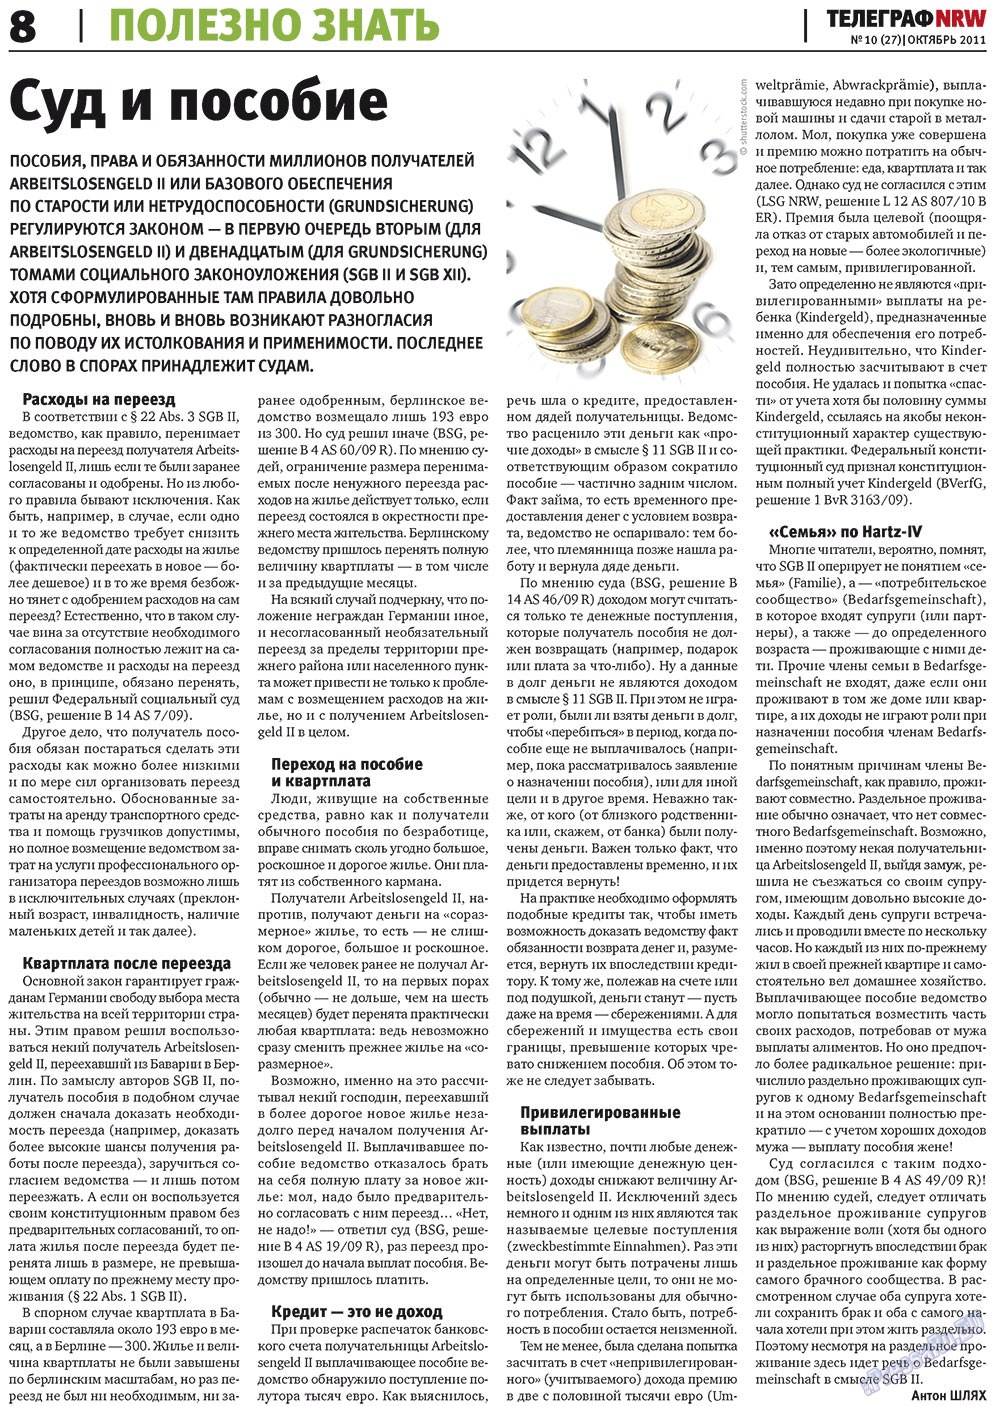 Телеграф NRW (газета). 2011 год, номер 10, стр. 8